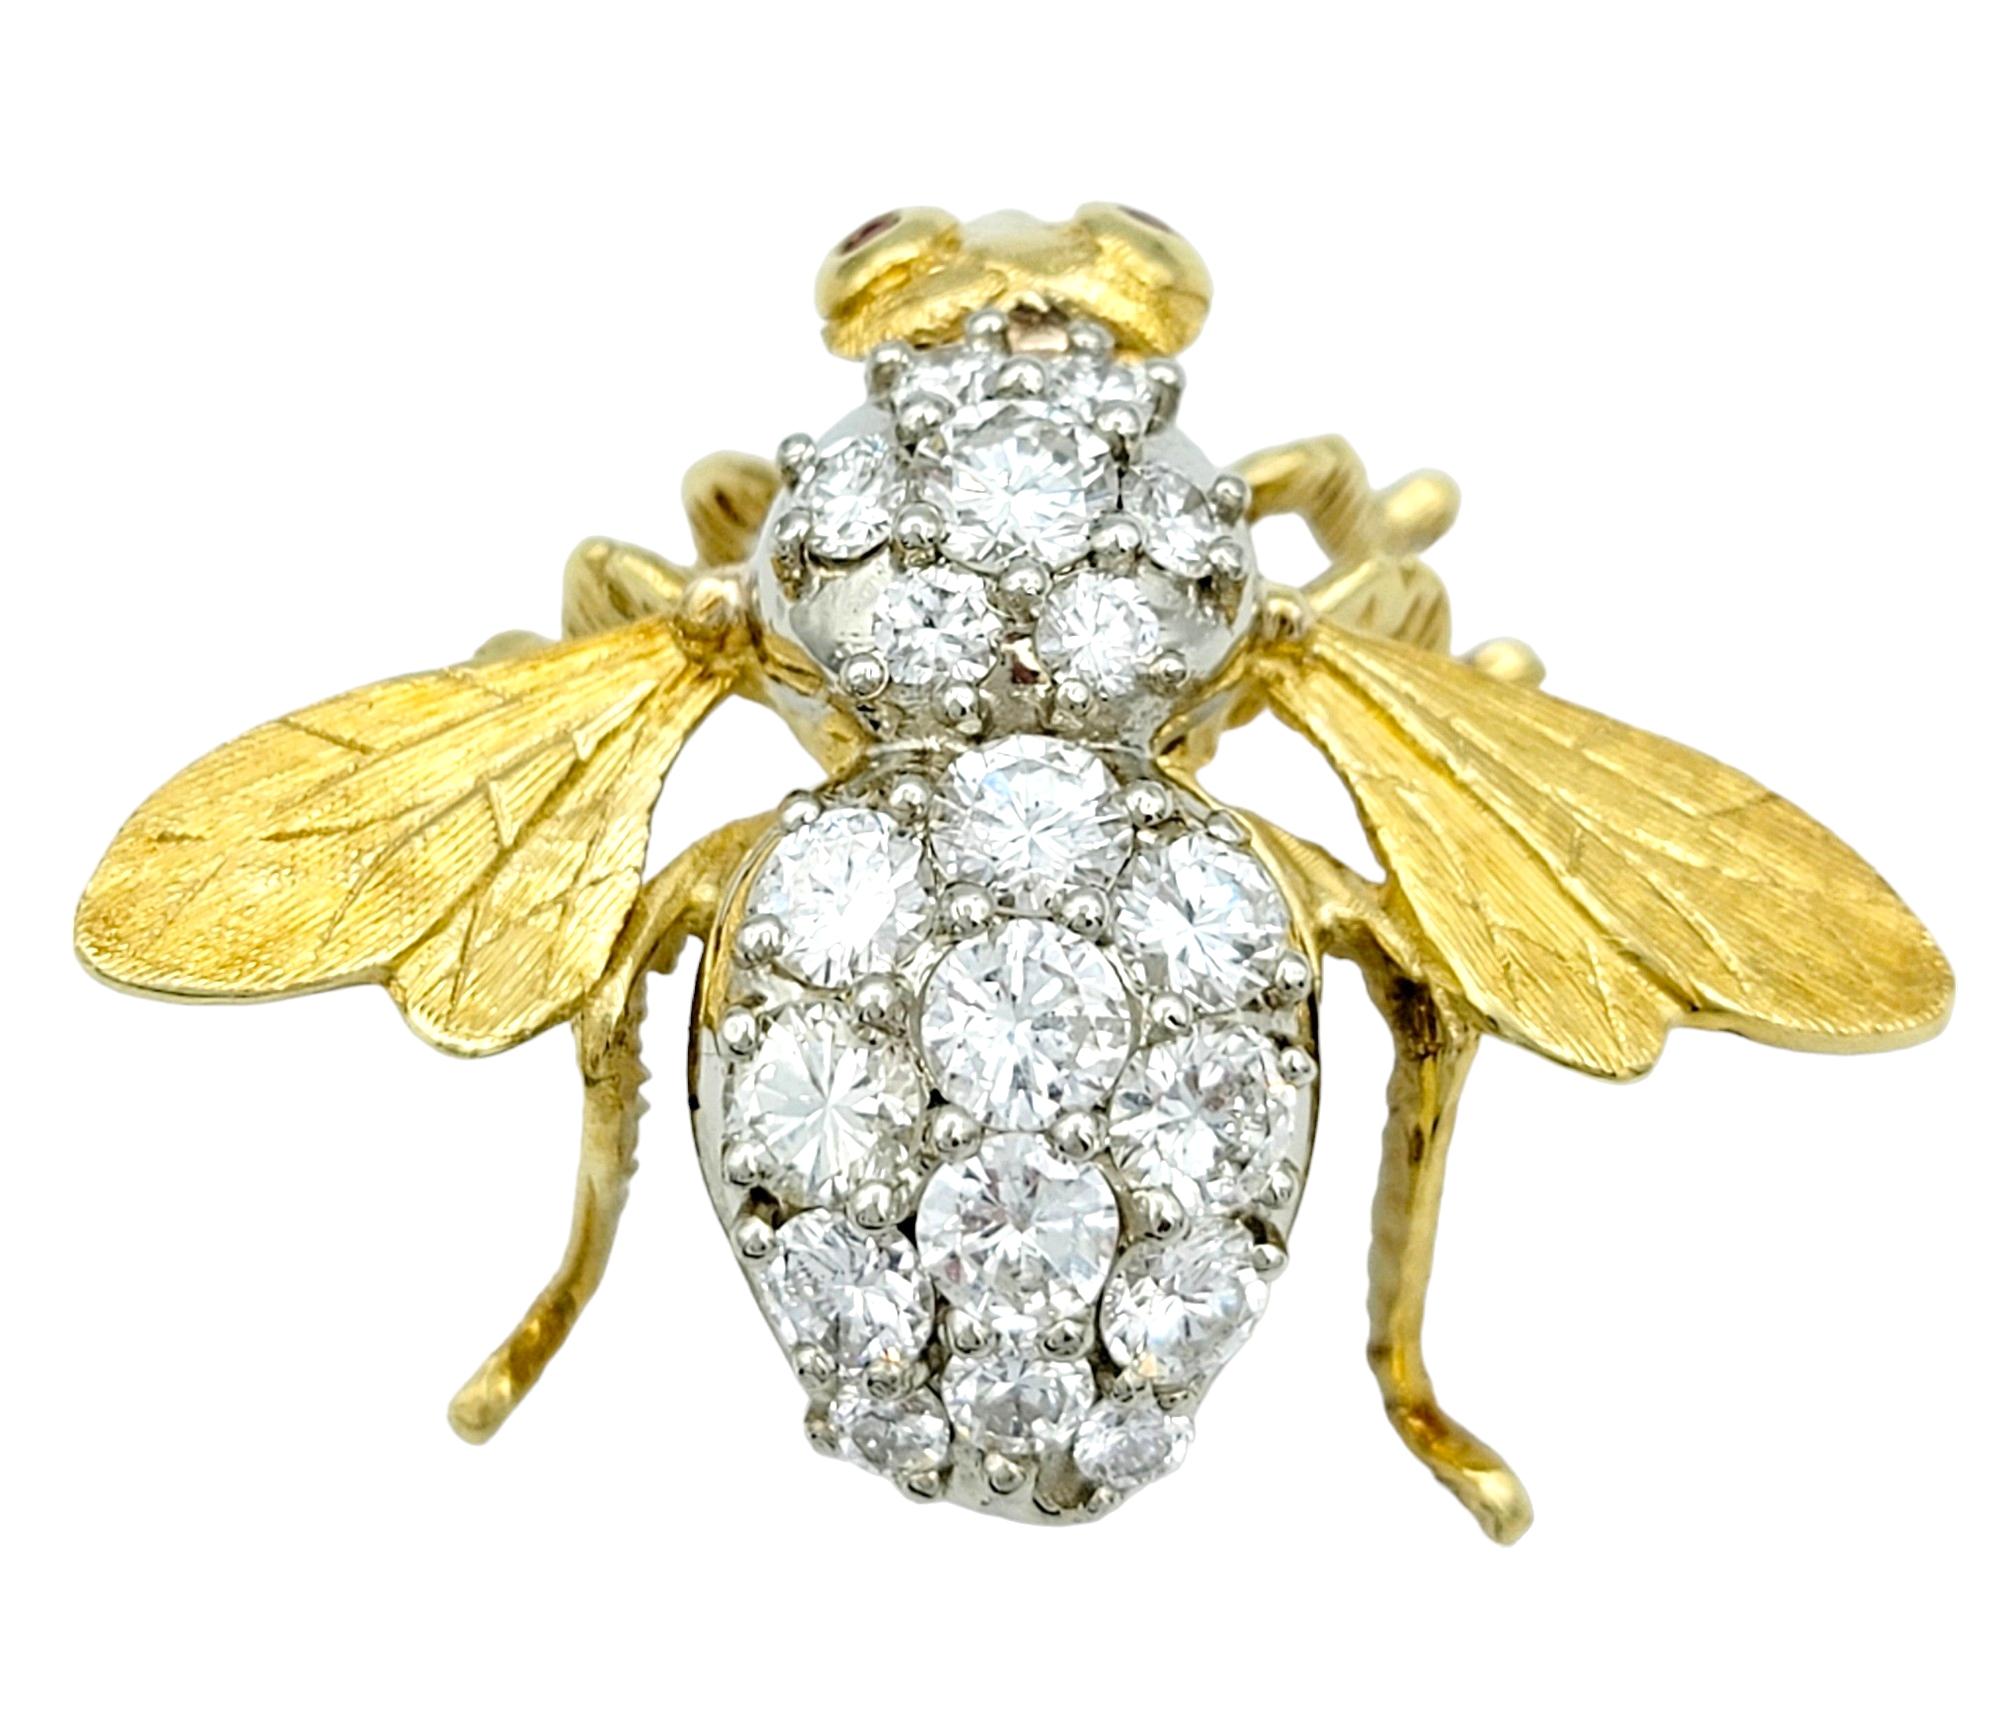 Cette broche captivante de Herbert Rosenthal témoigne d'un savoir-faire exquis et d'un design raffiné. Réalisée en luxueux or jaune 18 carats, la broche prend la forme d'une gracieuse abeille, ornée d'un spectaculaire éventail de diamants. Le corps